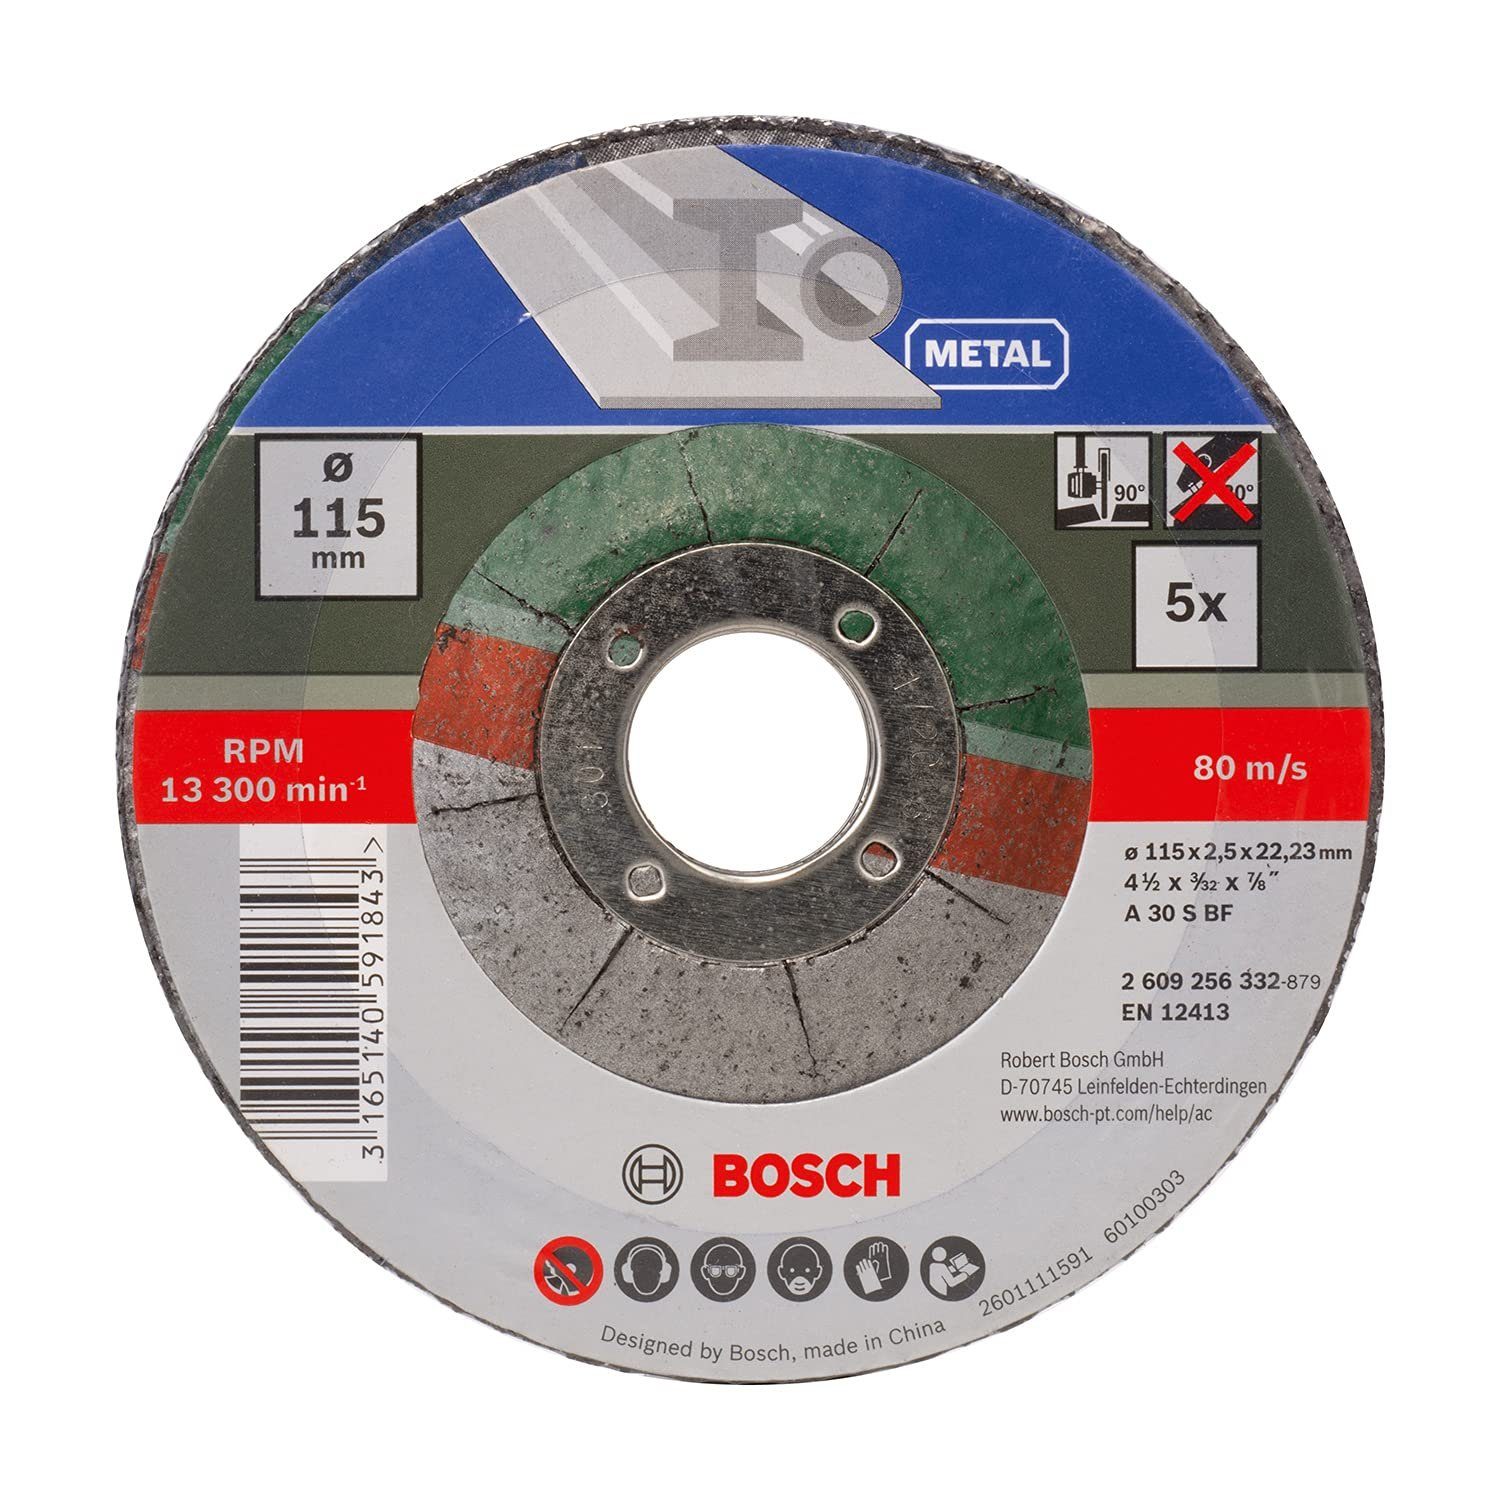 Trennscheibe 2,5 mm A gekröpft Metal BF 115 Bosch Bohrfutter BOSCH S x 5 30 for mm